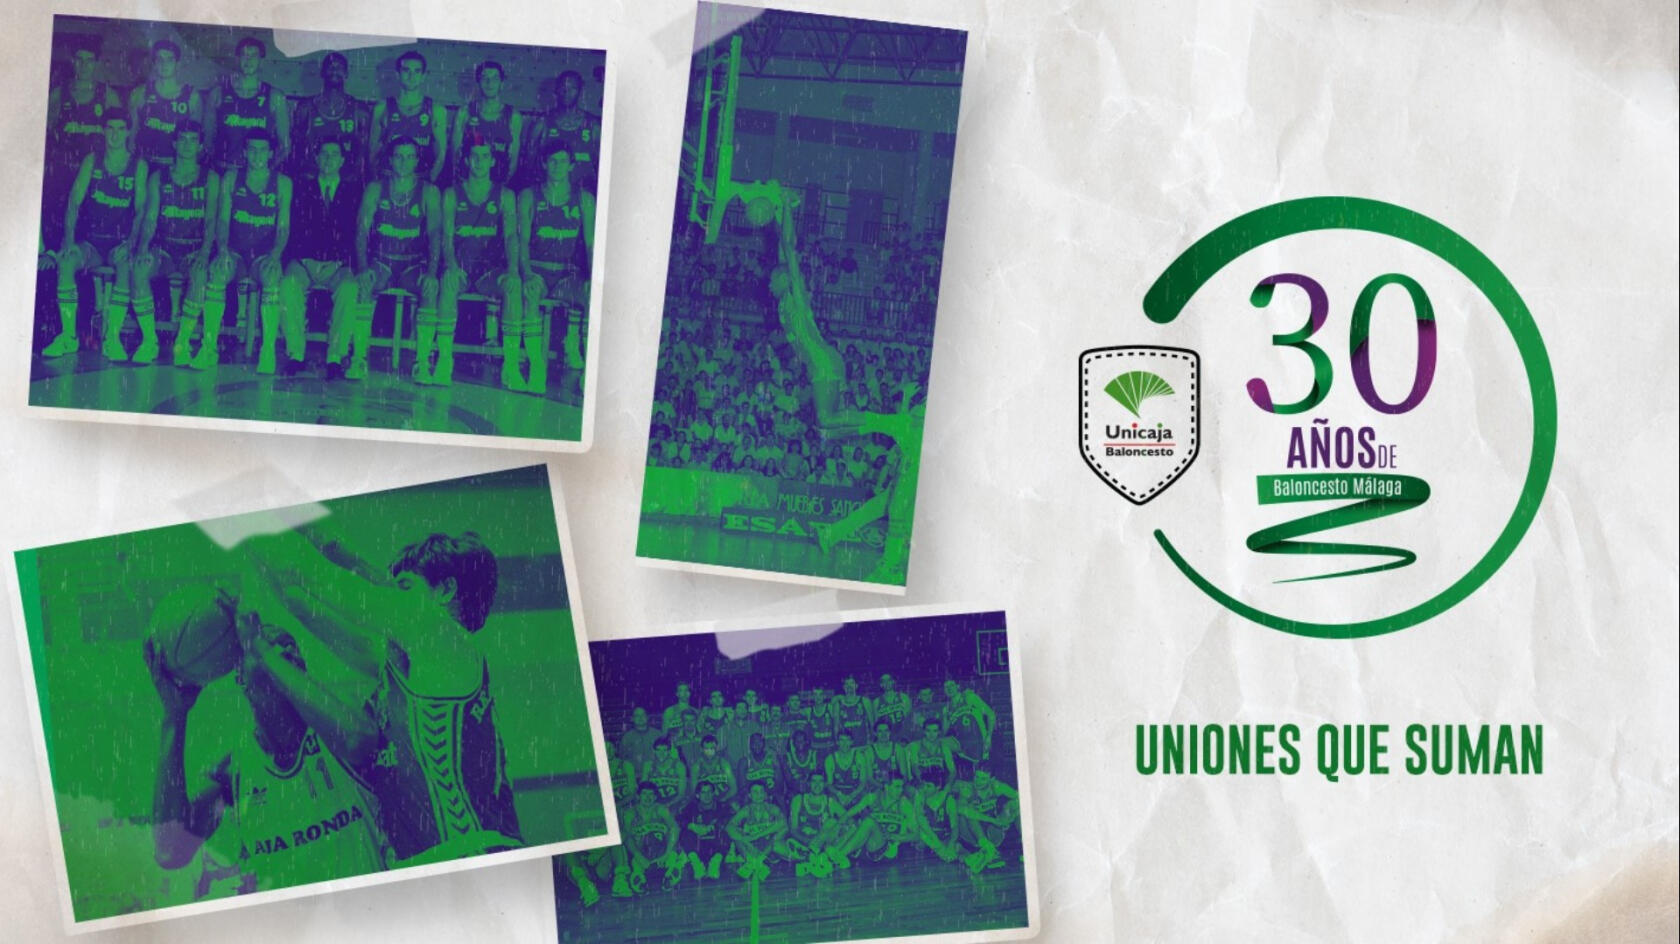 Uniones que suman: celebramos los 30 años de Baloncesto Málaga